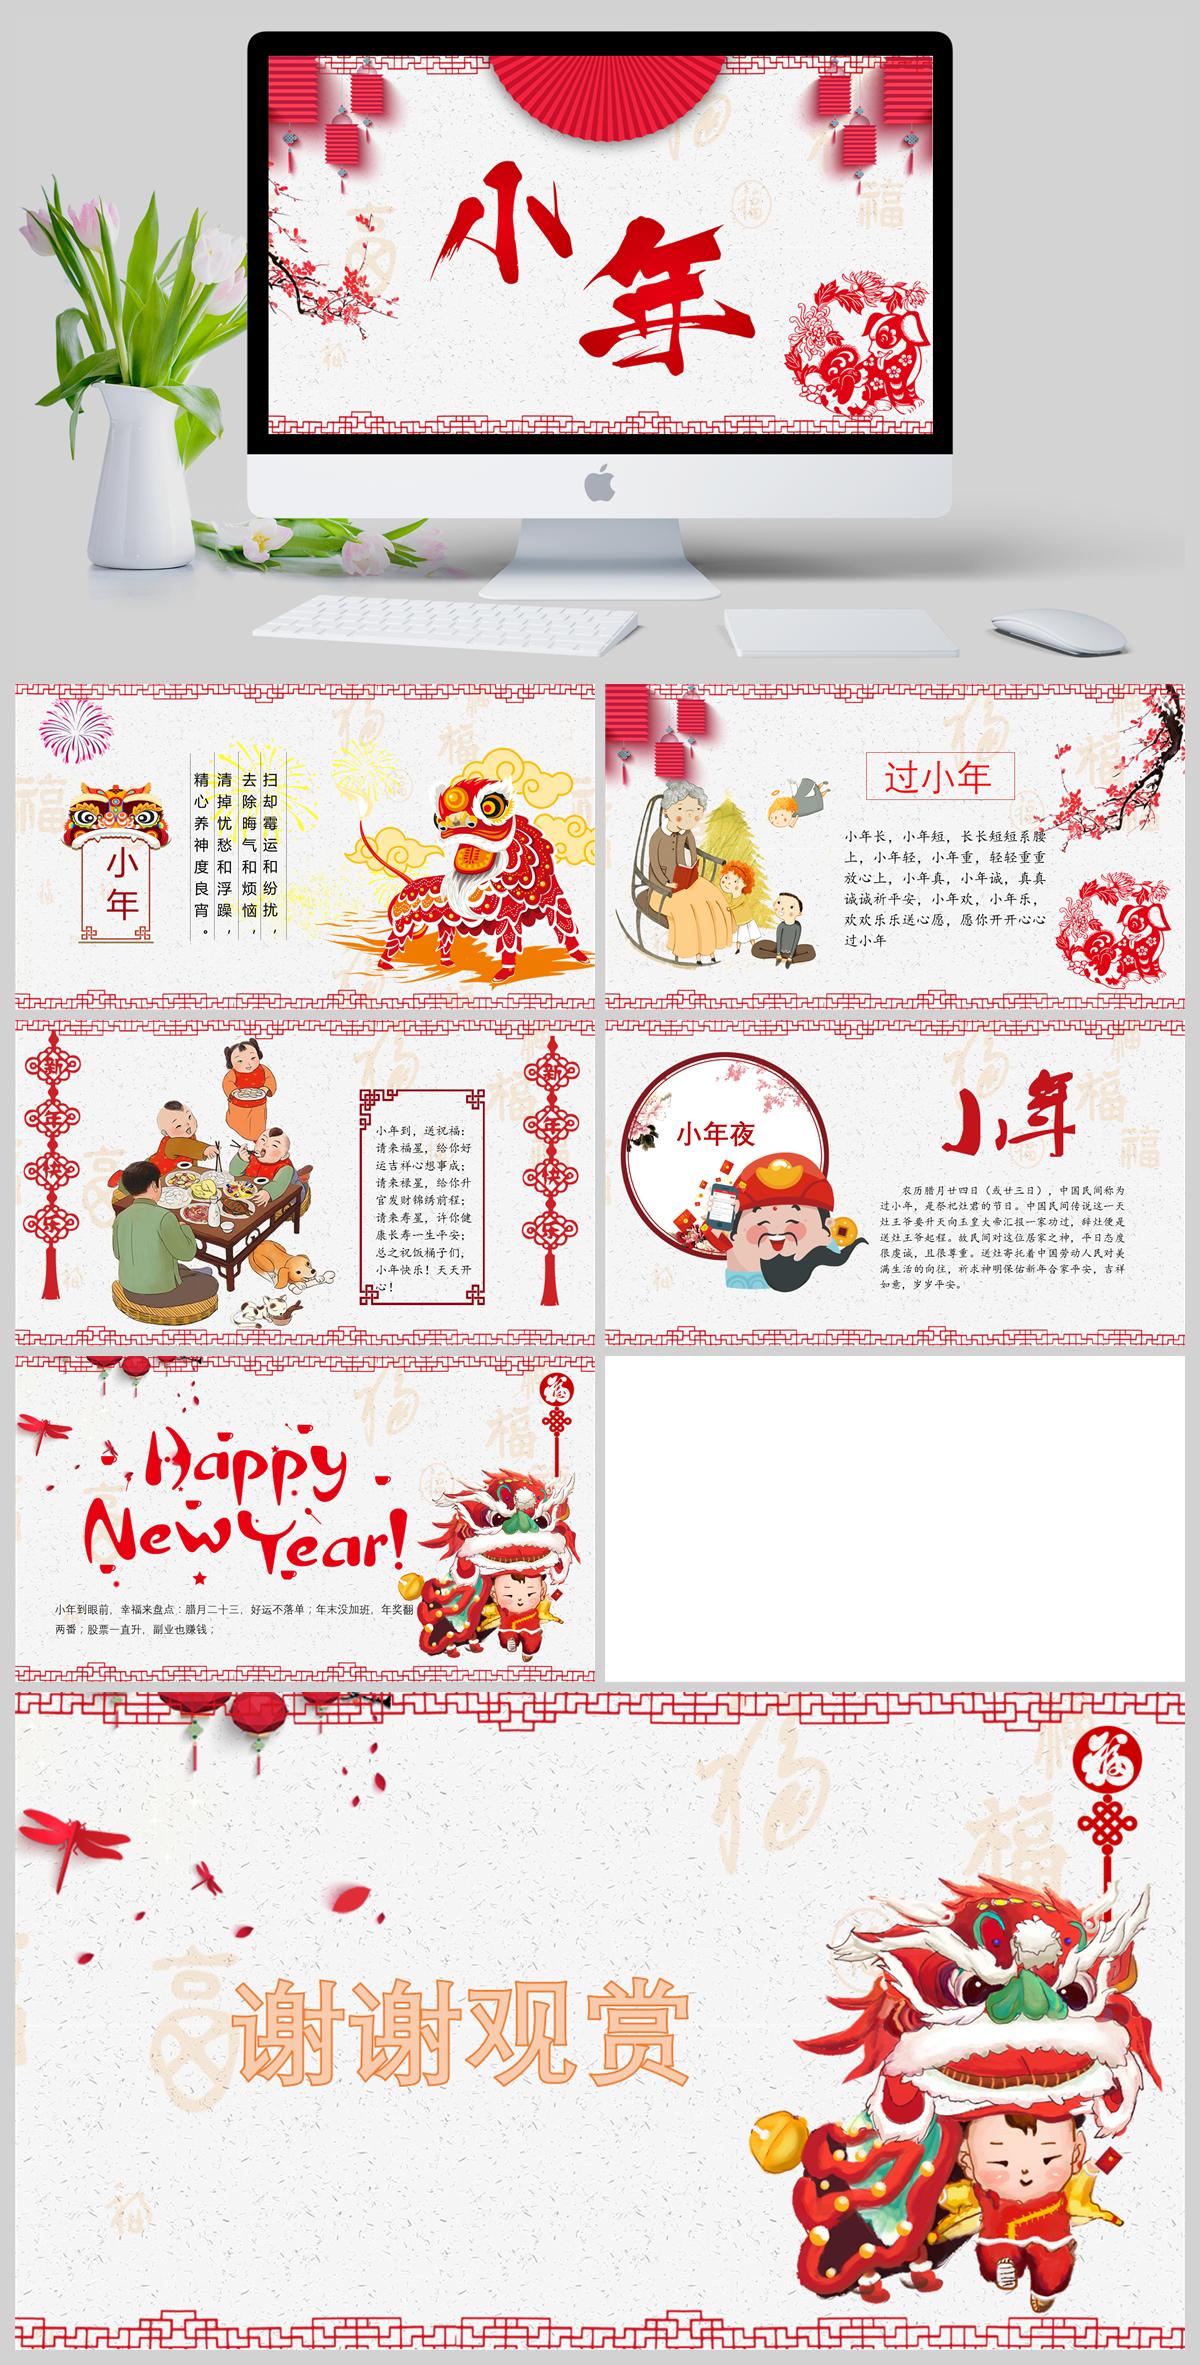 新年快乐电子贺卡新年祝福红色中国风春节习俗传统文化PPT模板下载